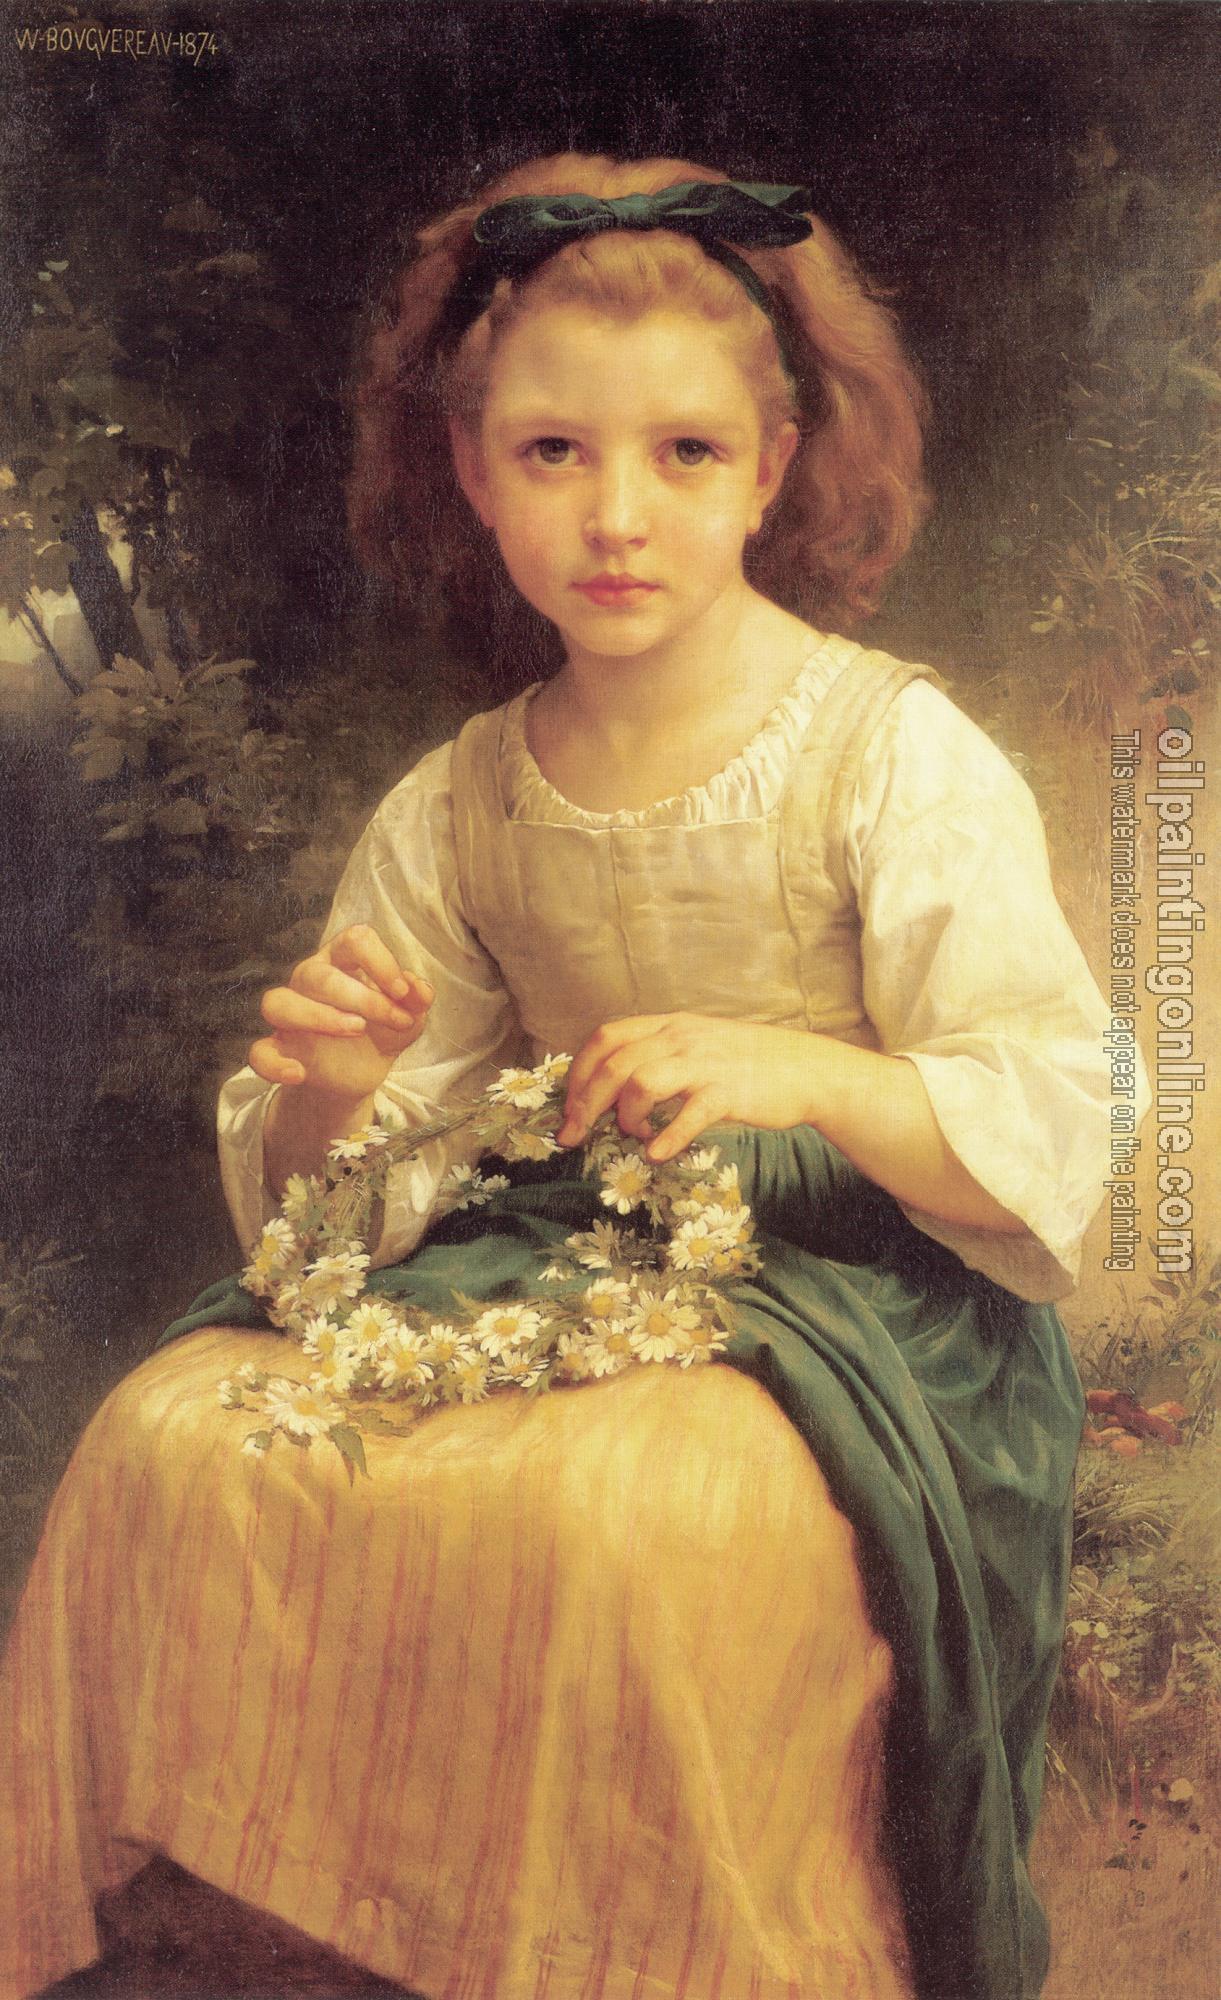 Bouguereau, William-Adolphe - Enfant tressant une couronne, Child braiding a crown